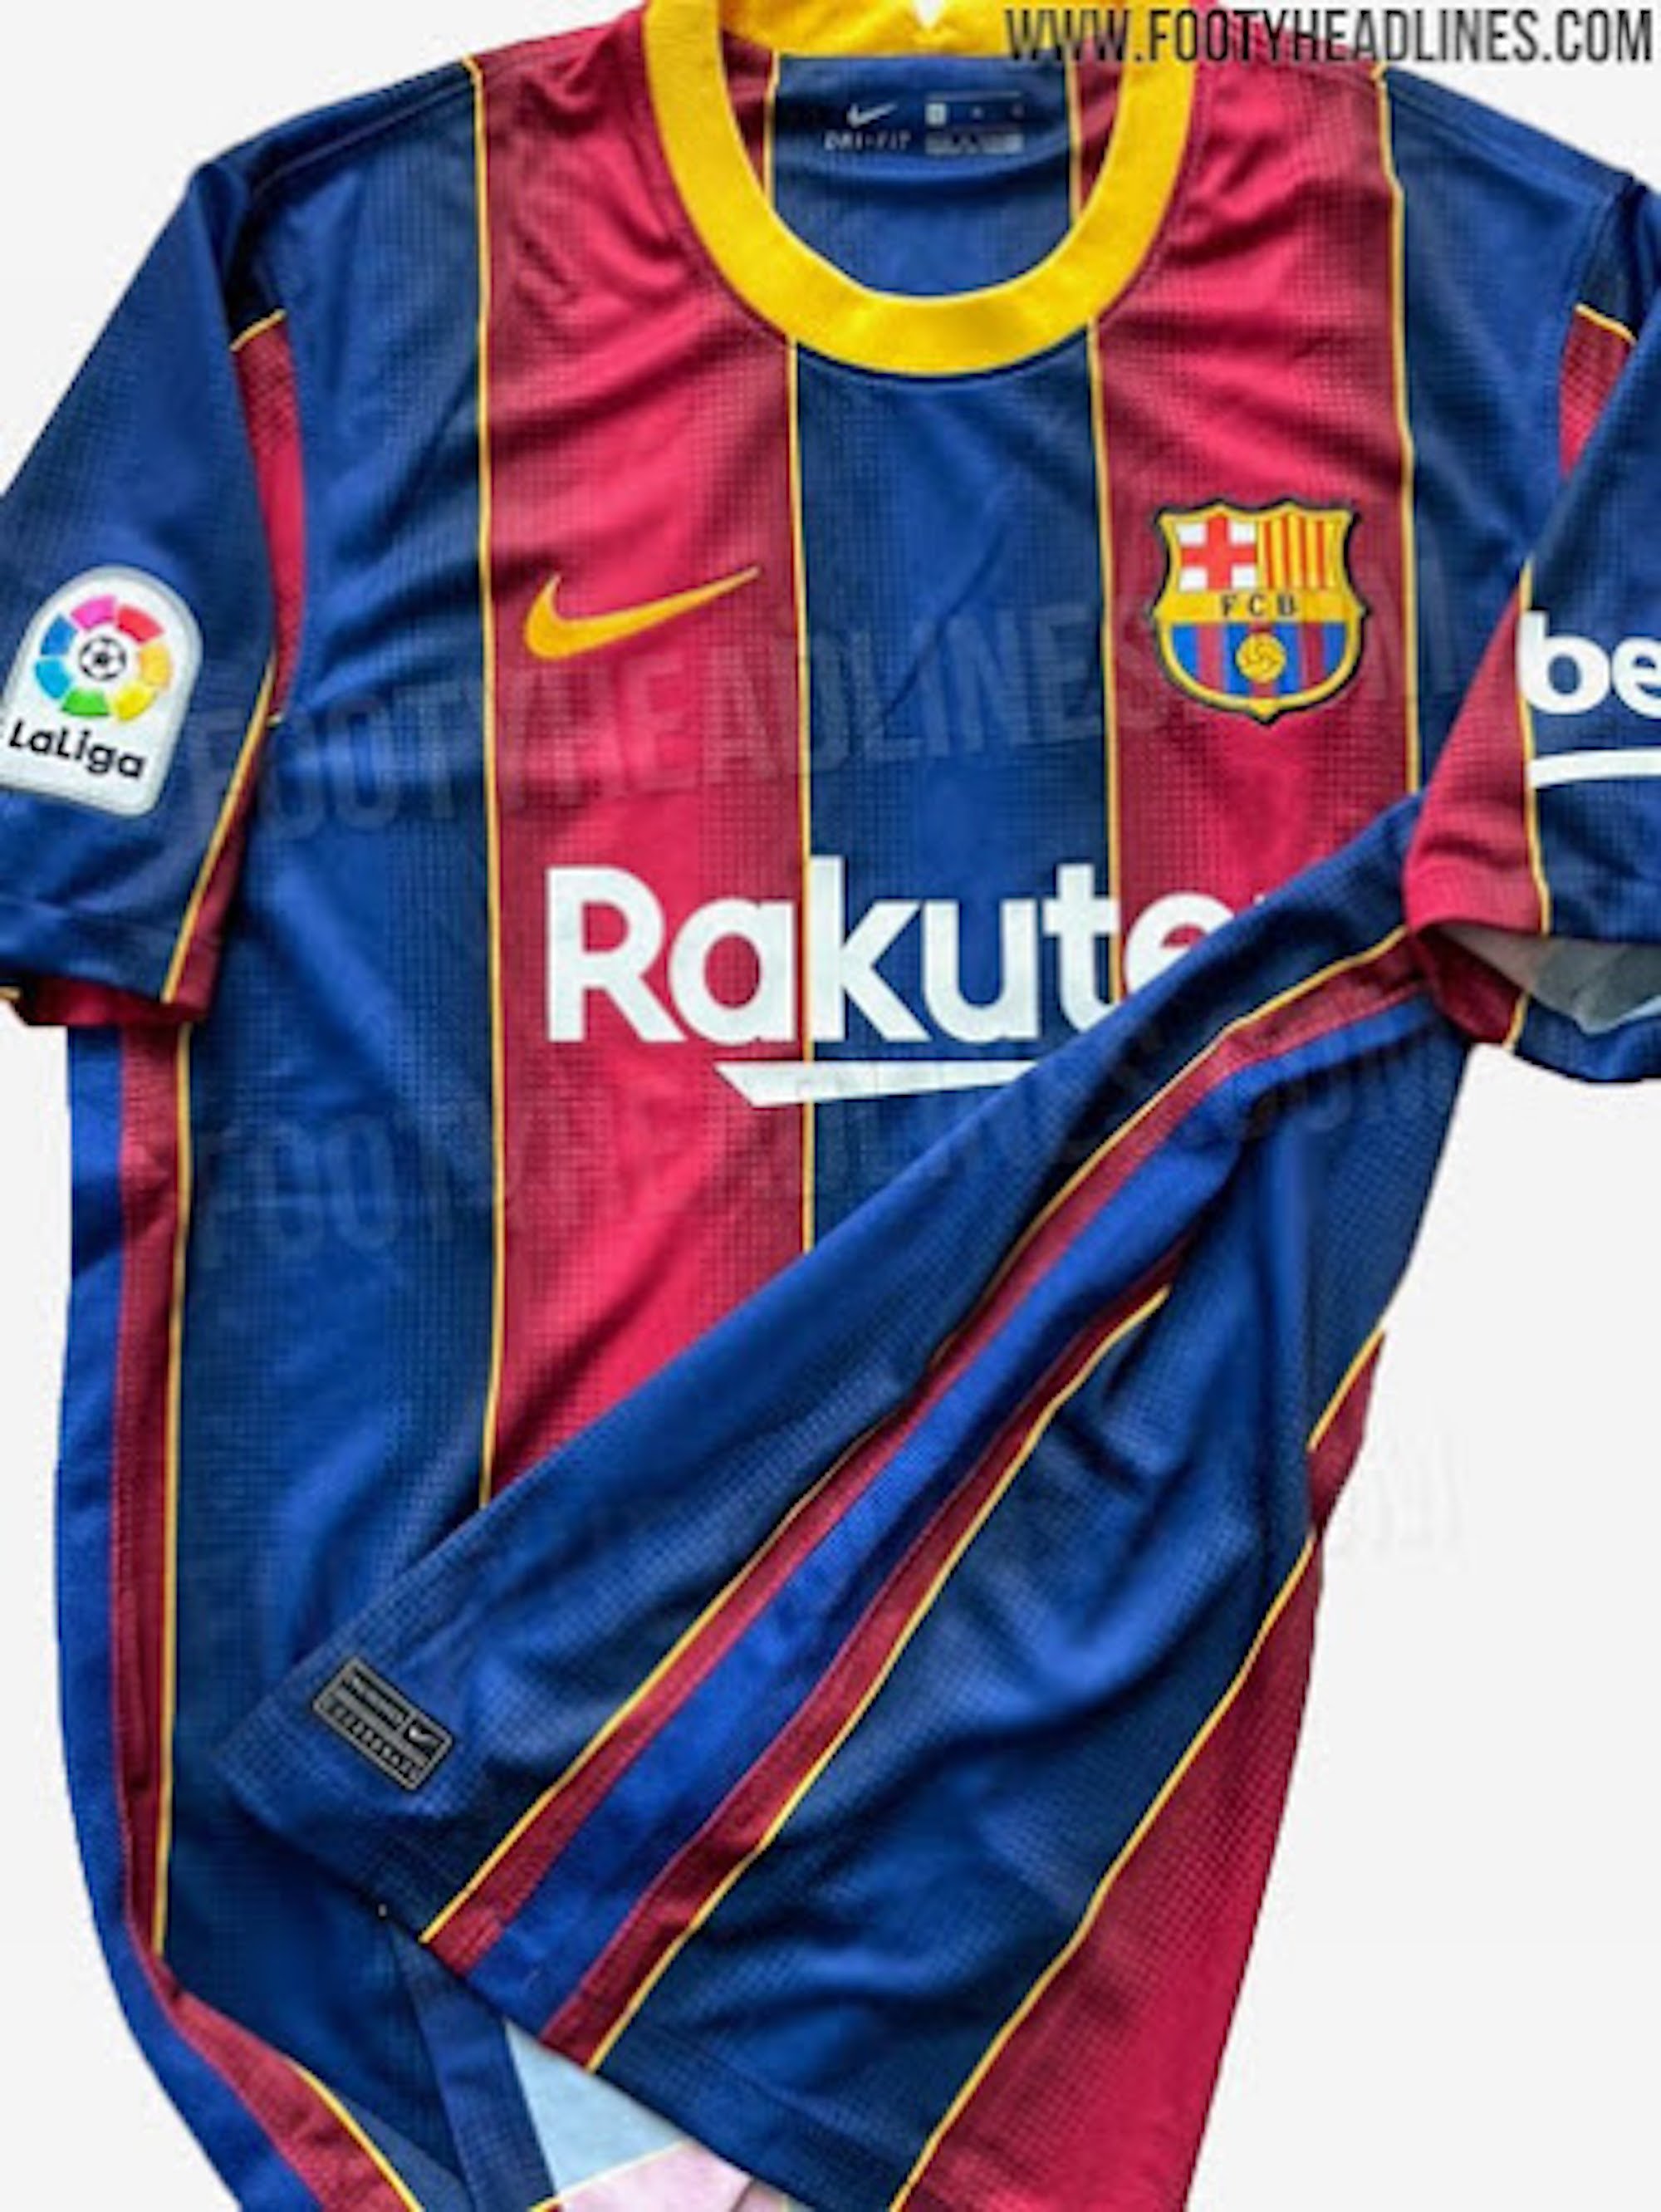 Nike retira la nova equipació del Barça perquè destenyeix